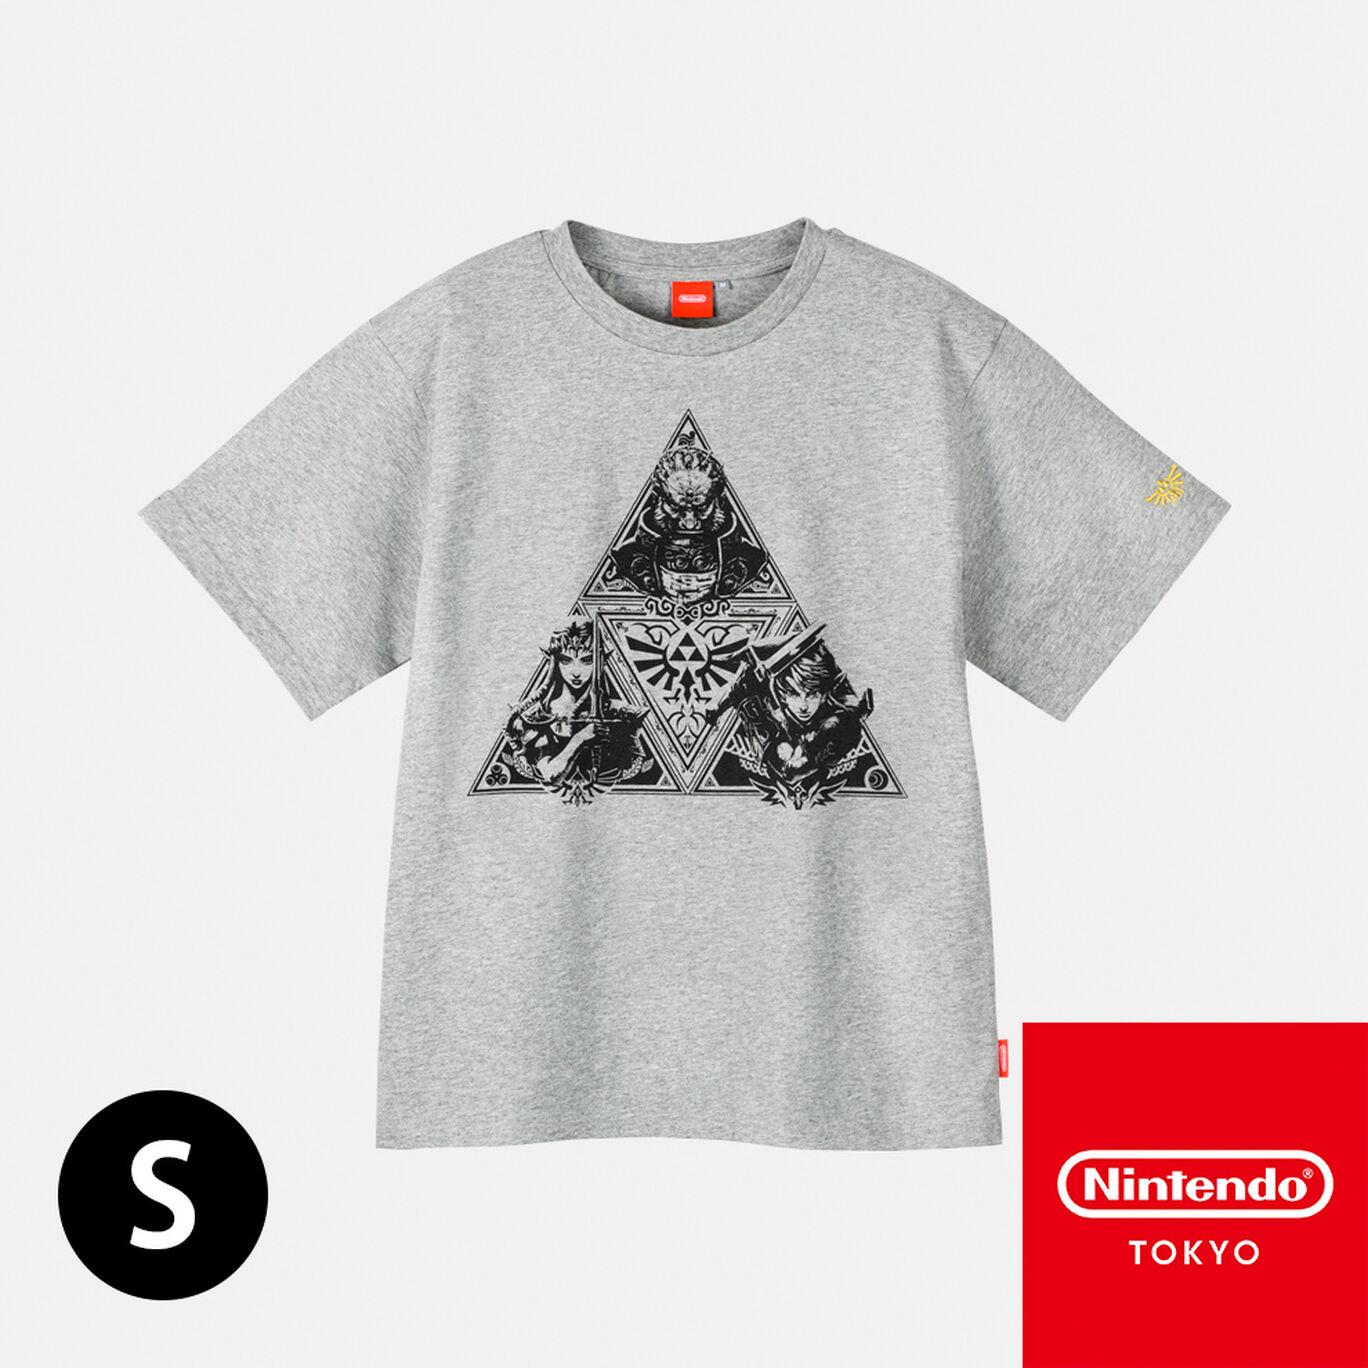 Tシャツ トライフォース S ゼルダの伝説【Nintendo TOKYO取り扱い商品】